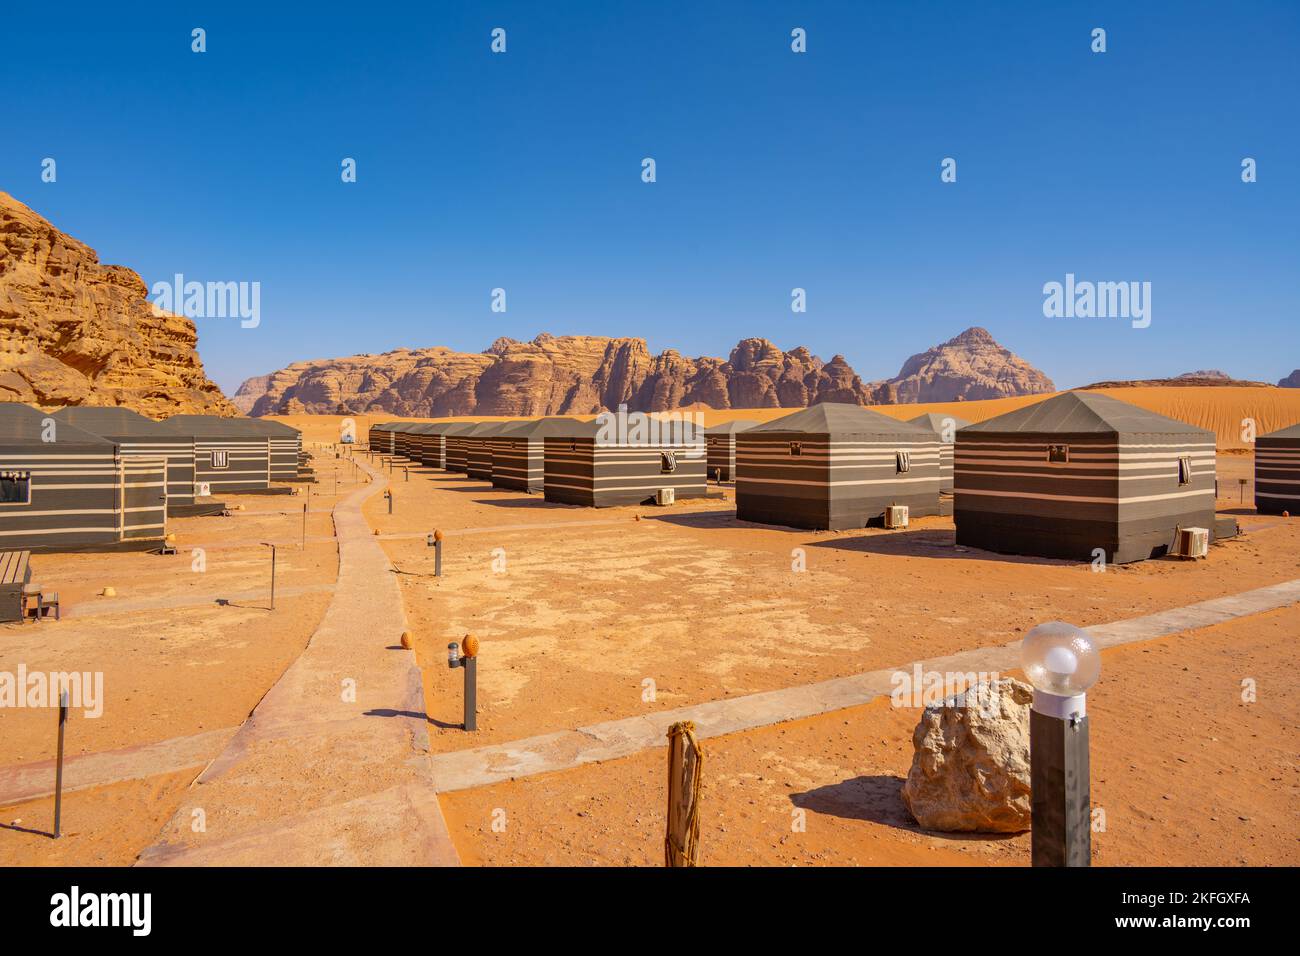 Desert camp in Wadi Rum Jordan Stock Photo